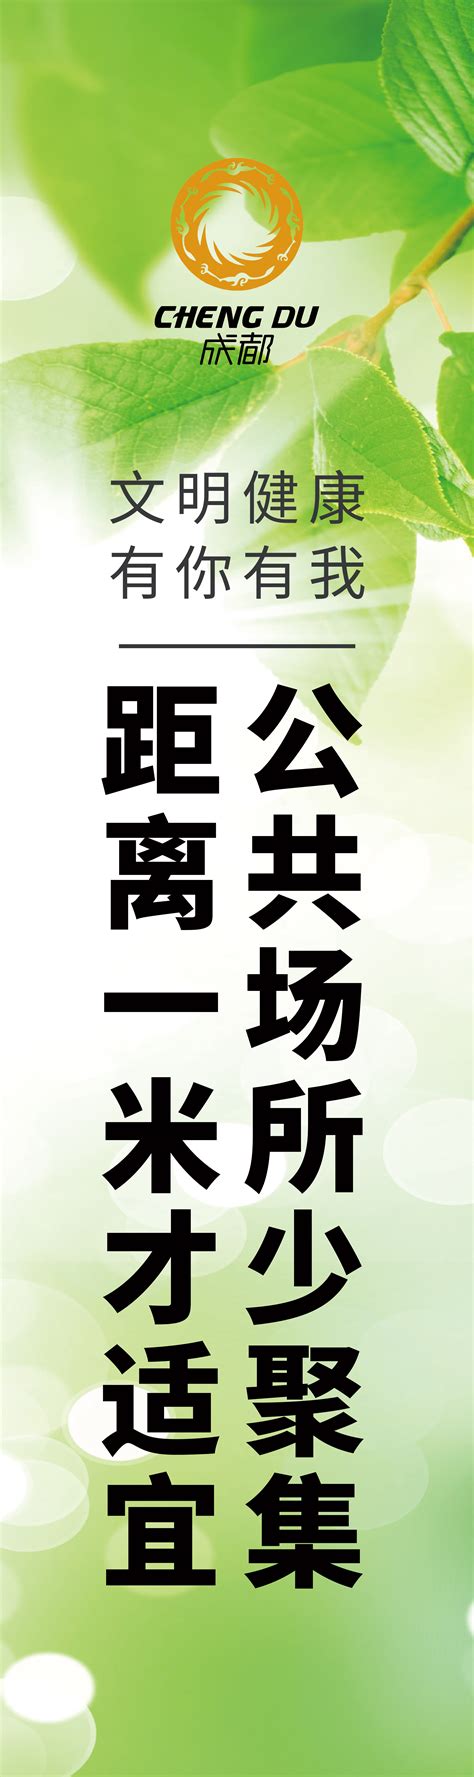 演员黄轩参加中国首届网络文明大会宣读“共建网络文明行动倡议”